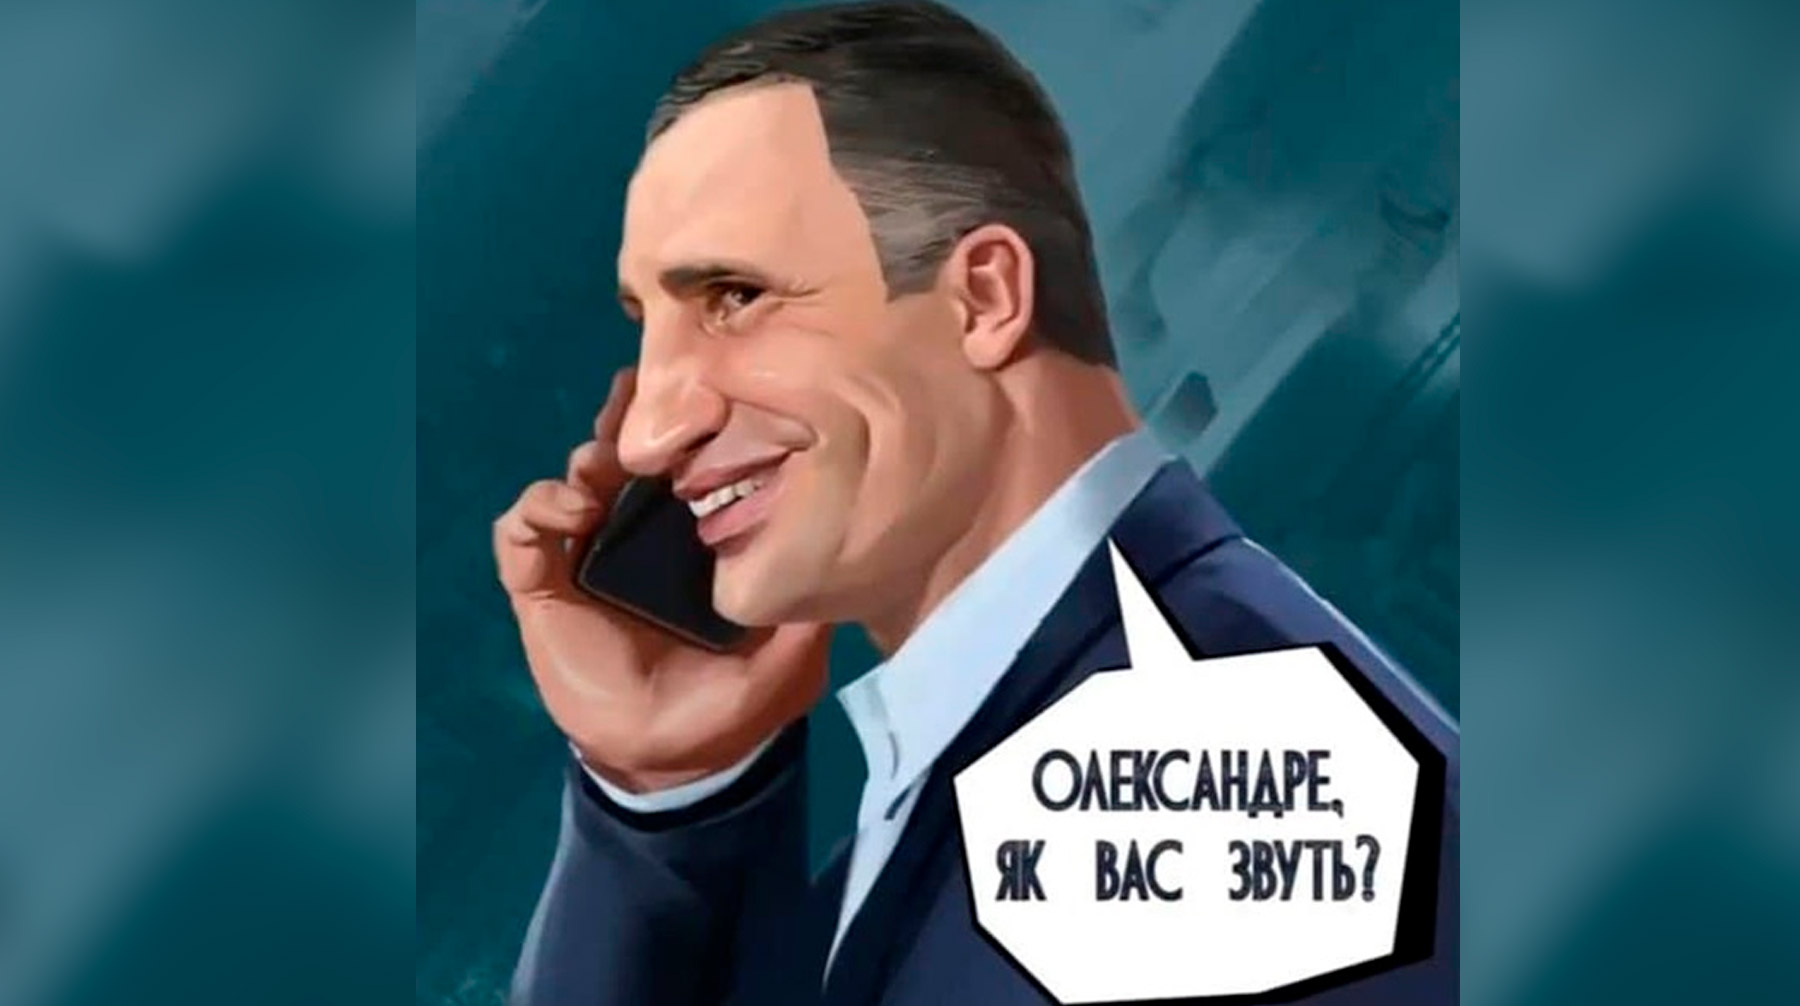 Мэр Киева издал иллюстрированный сборник со своими известными высказываниями, назвав его позитивным Фото: © иллюстрация из книги "Кто не слышал, тот увидит!"